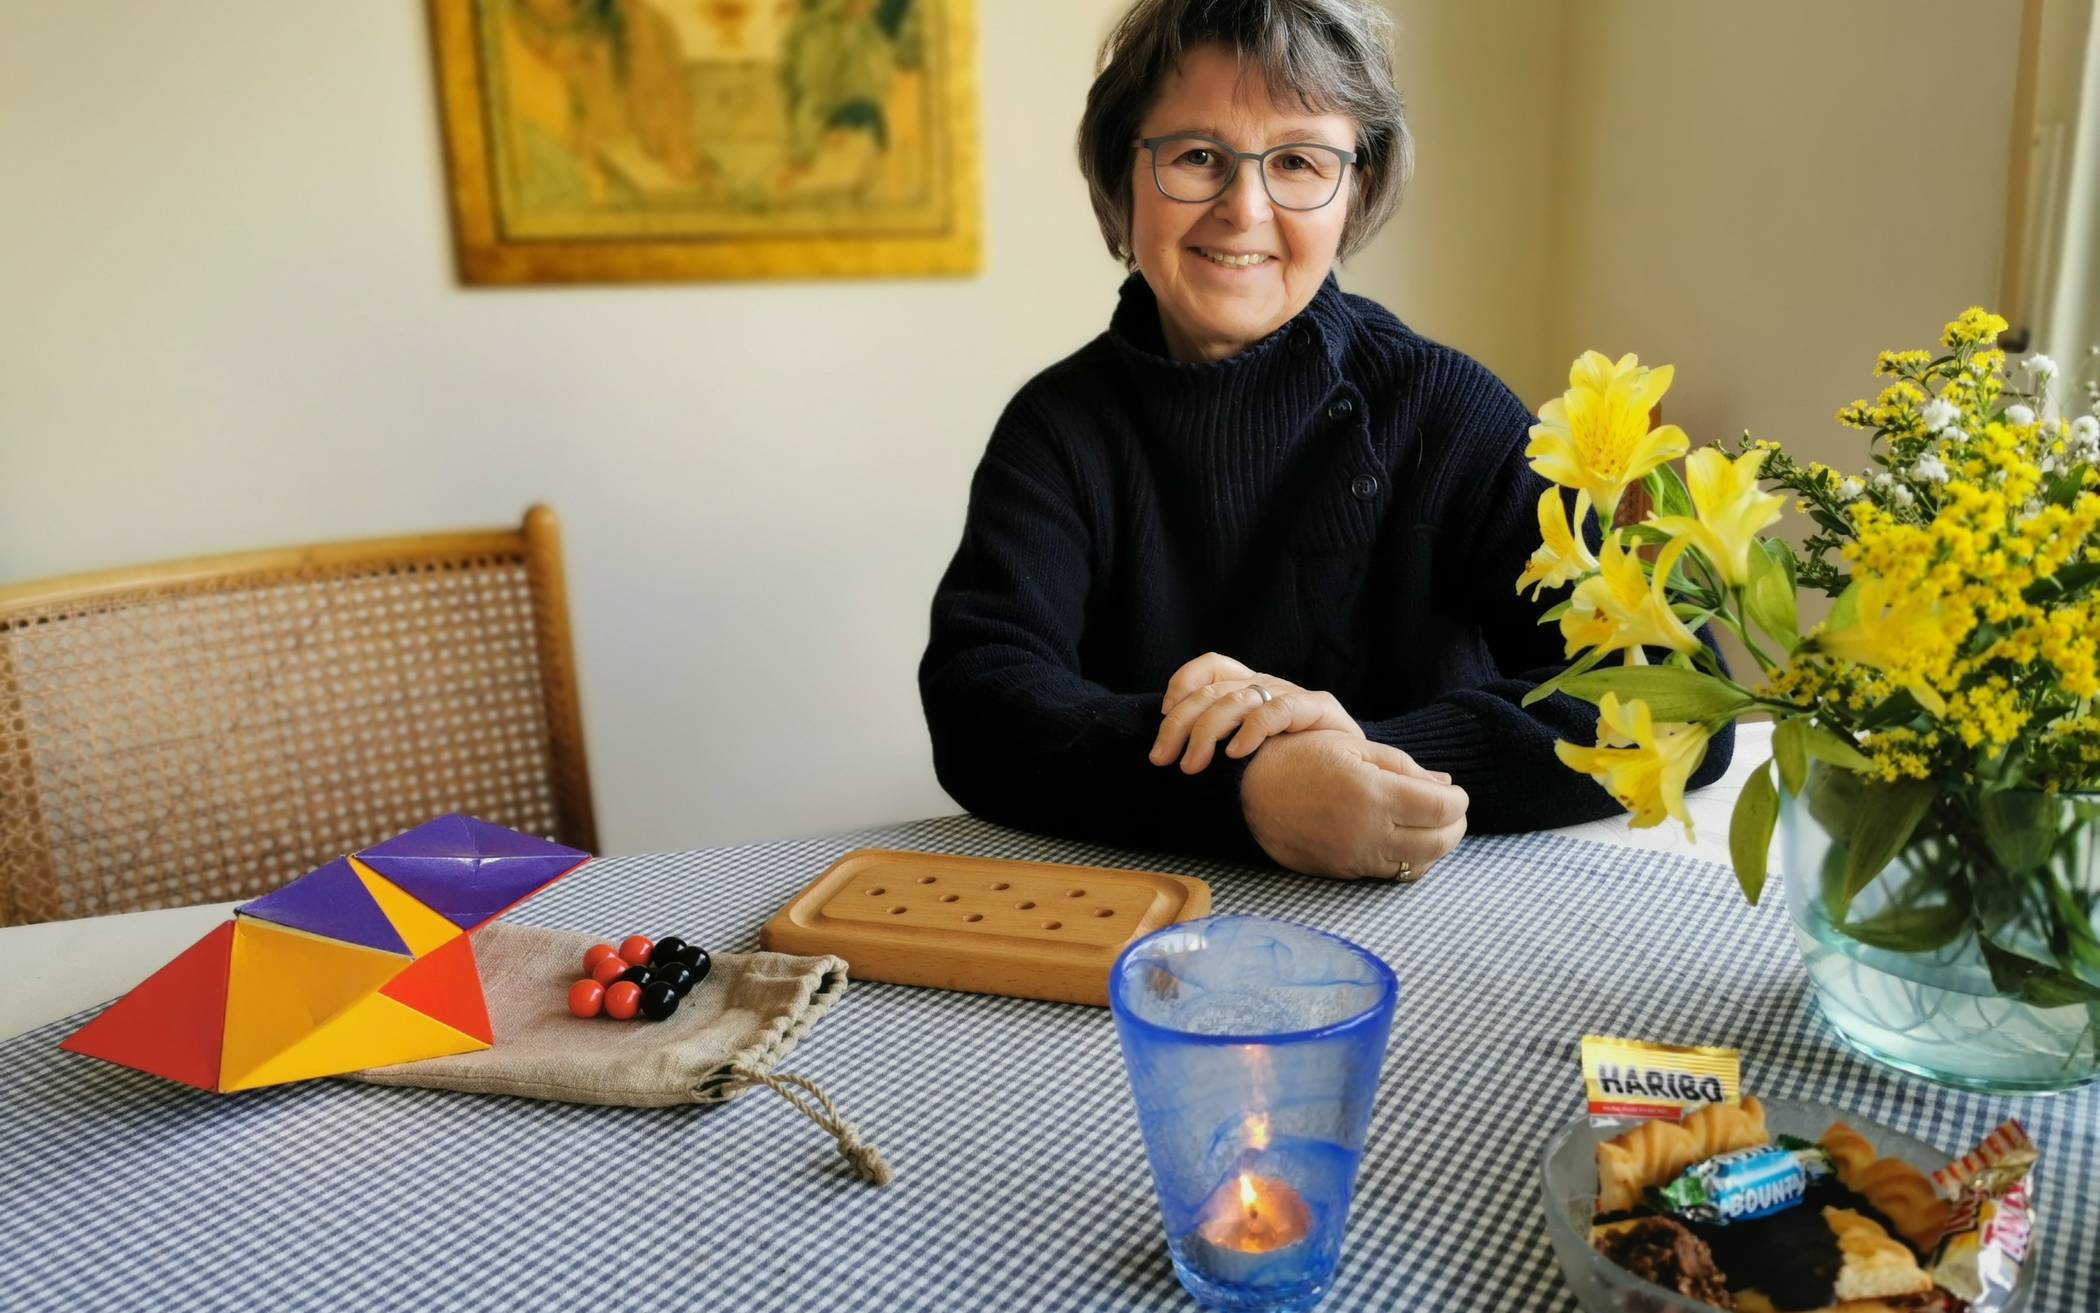  Die Vohwinkelerin Barbara Hückelheim hat zum Gespräch mit der Redaktion den Tisch so gedeckt, wie sie es auch in ihrer Spielgruppe in der JVA Vohwinkel macht: mit Blumen, Kerze und Tischdecke.  